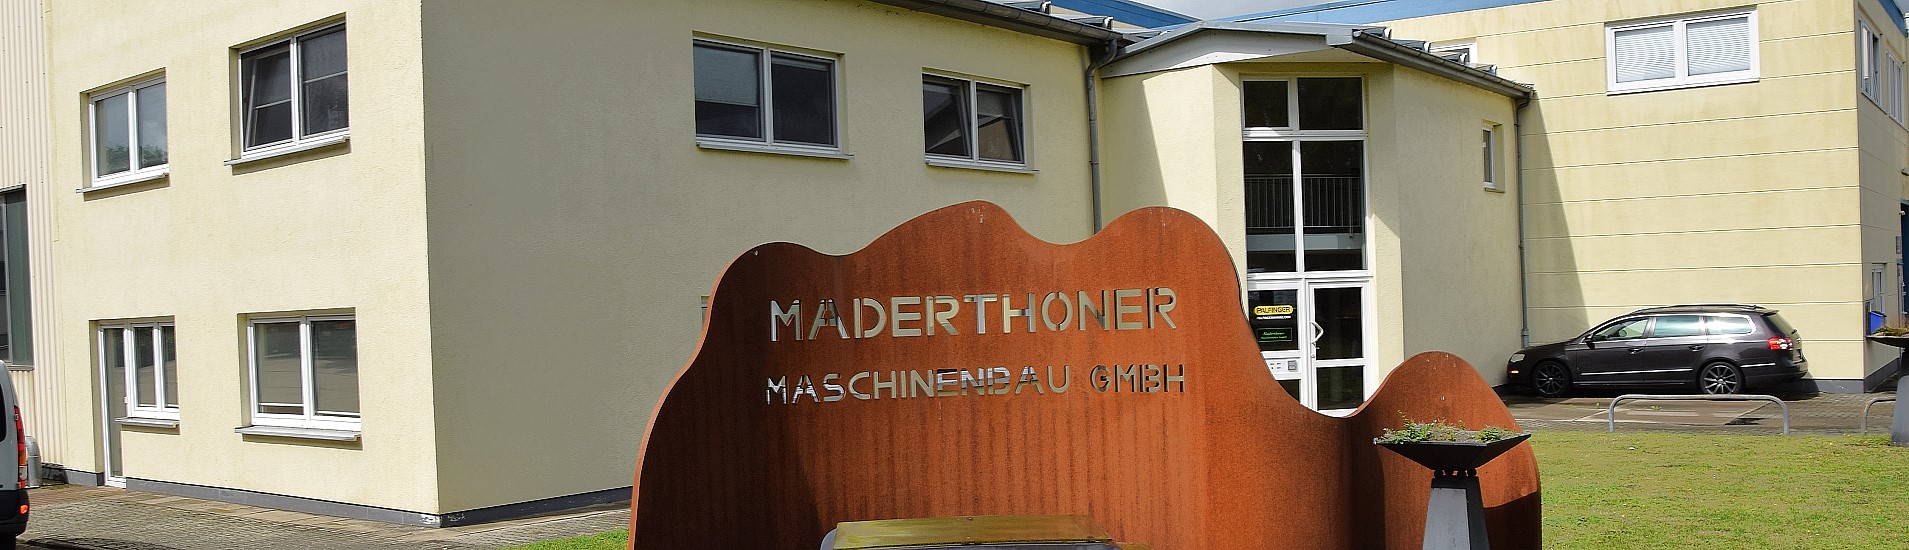 Maderthoner Maschinenbau - Certificates